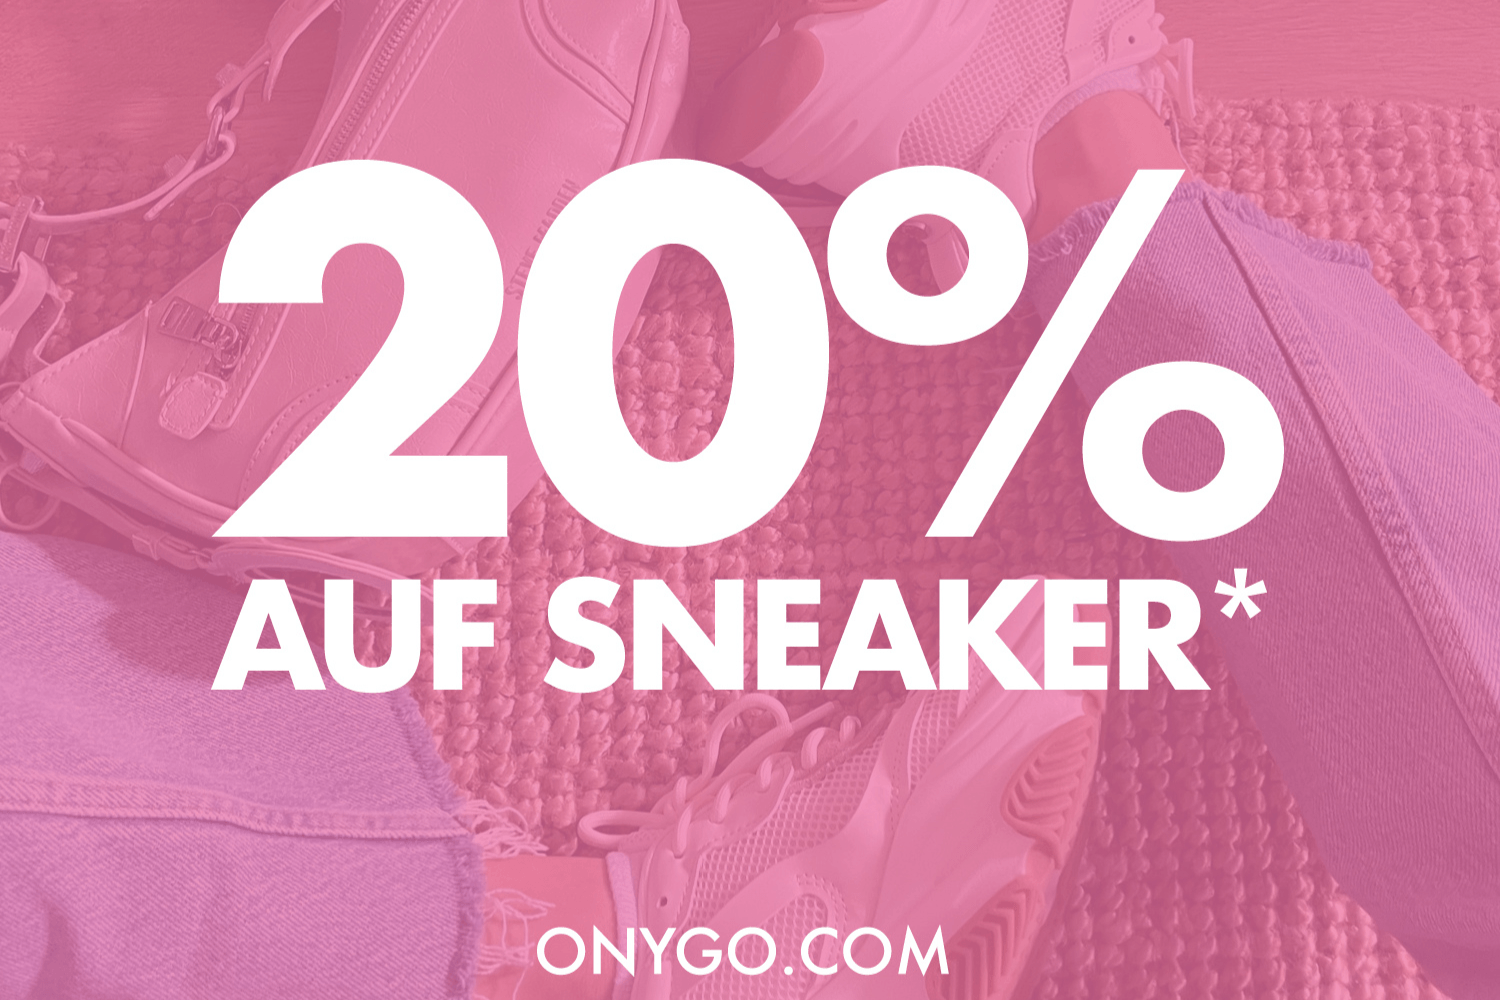 Spare 20% auf Sneaker mit dem Hot Deal bei ONYGO